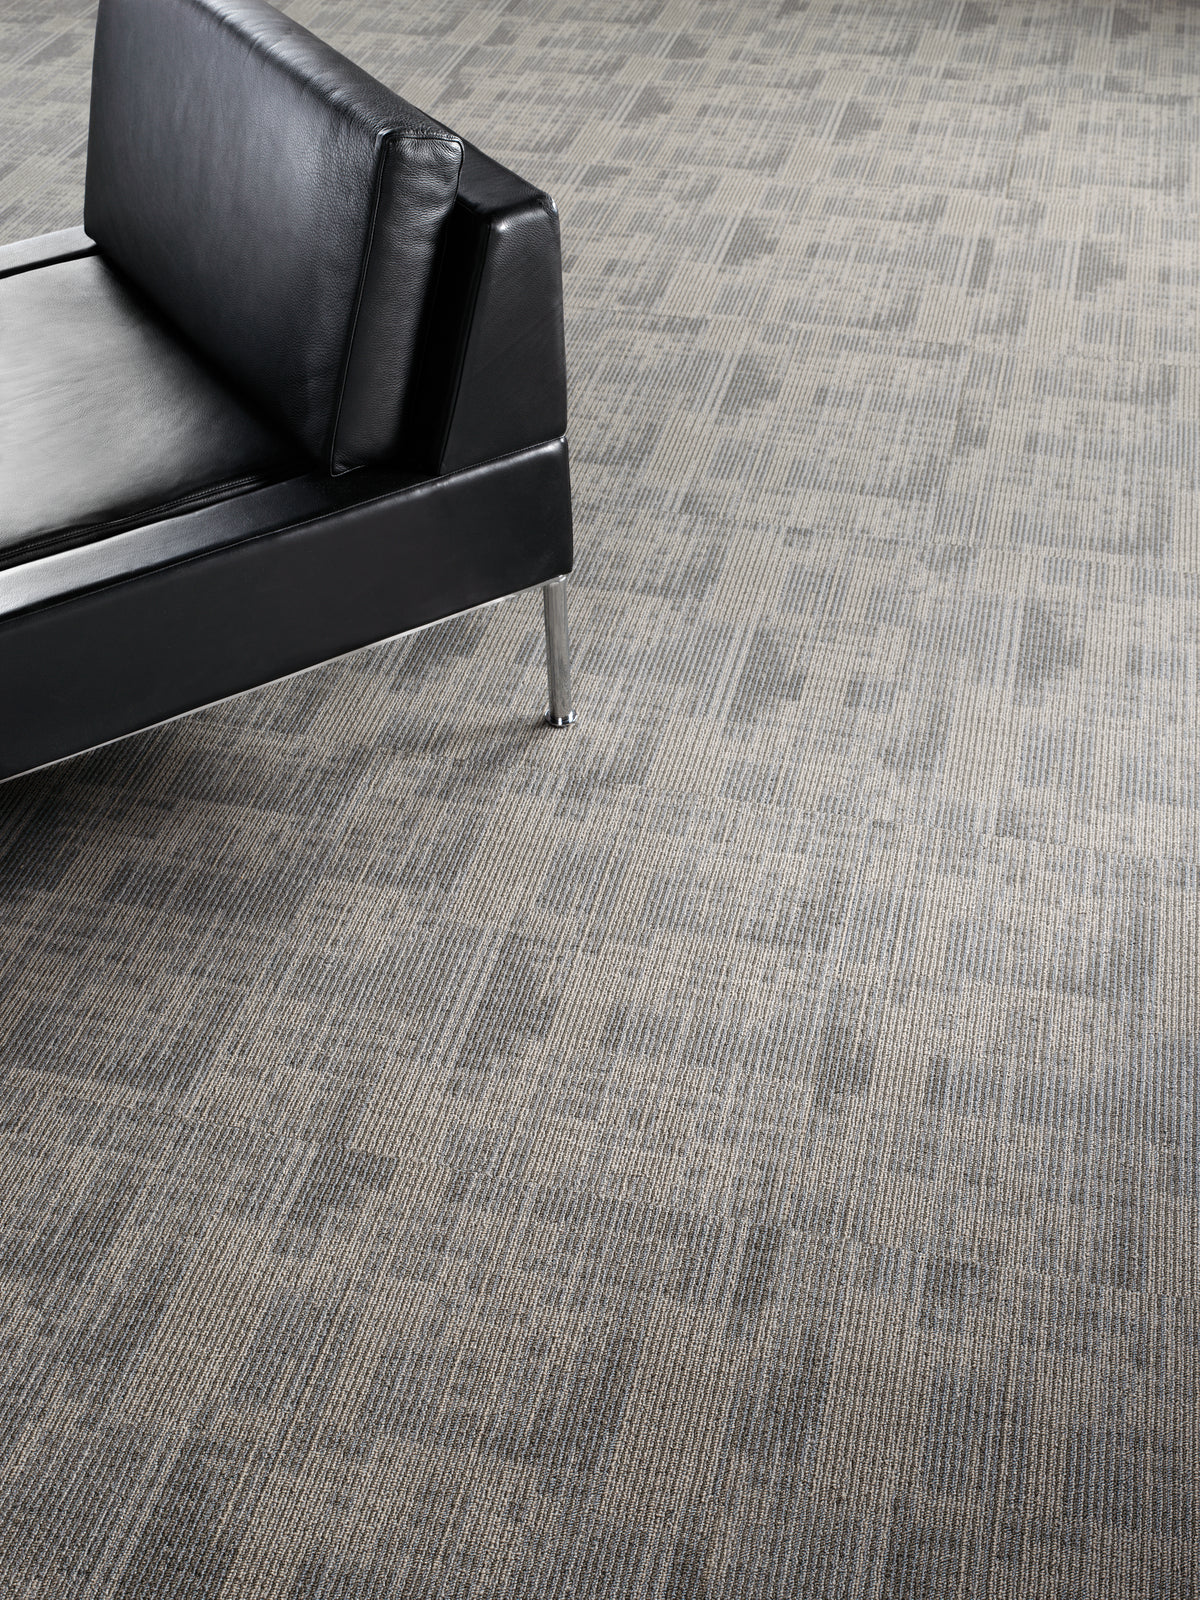 Mohawk Group - Bending Earth - Caliber - Carpet Tile - Room